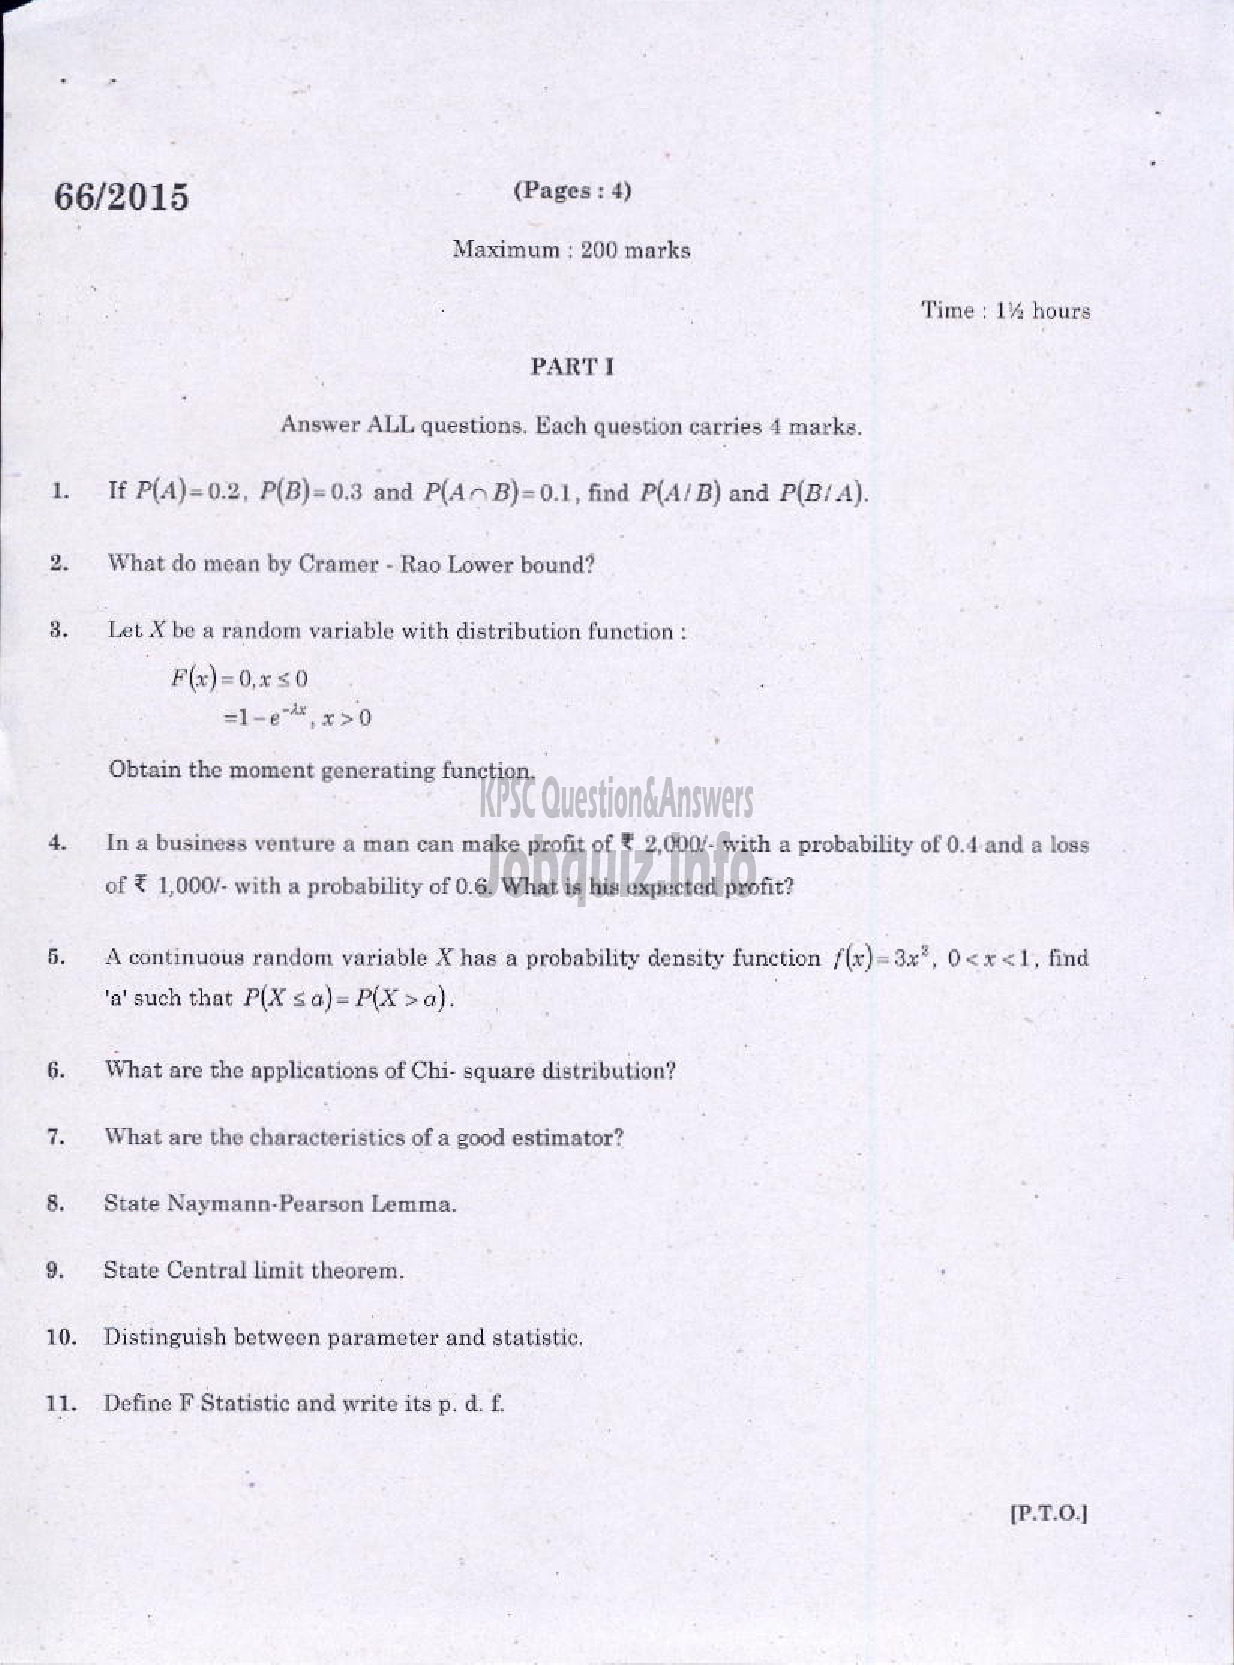 Kerala PSC Question Paper - STATISTICS-1